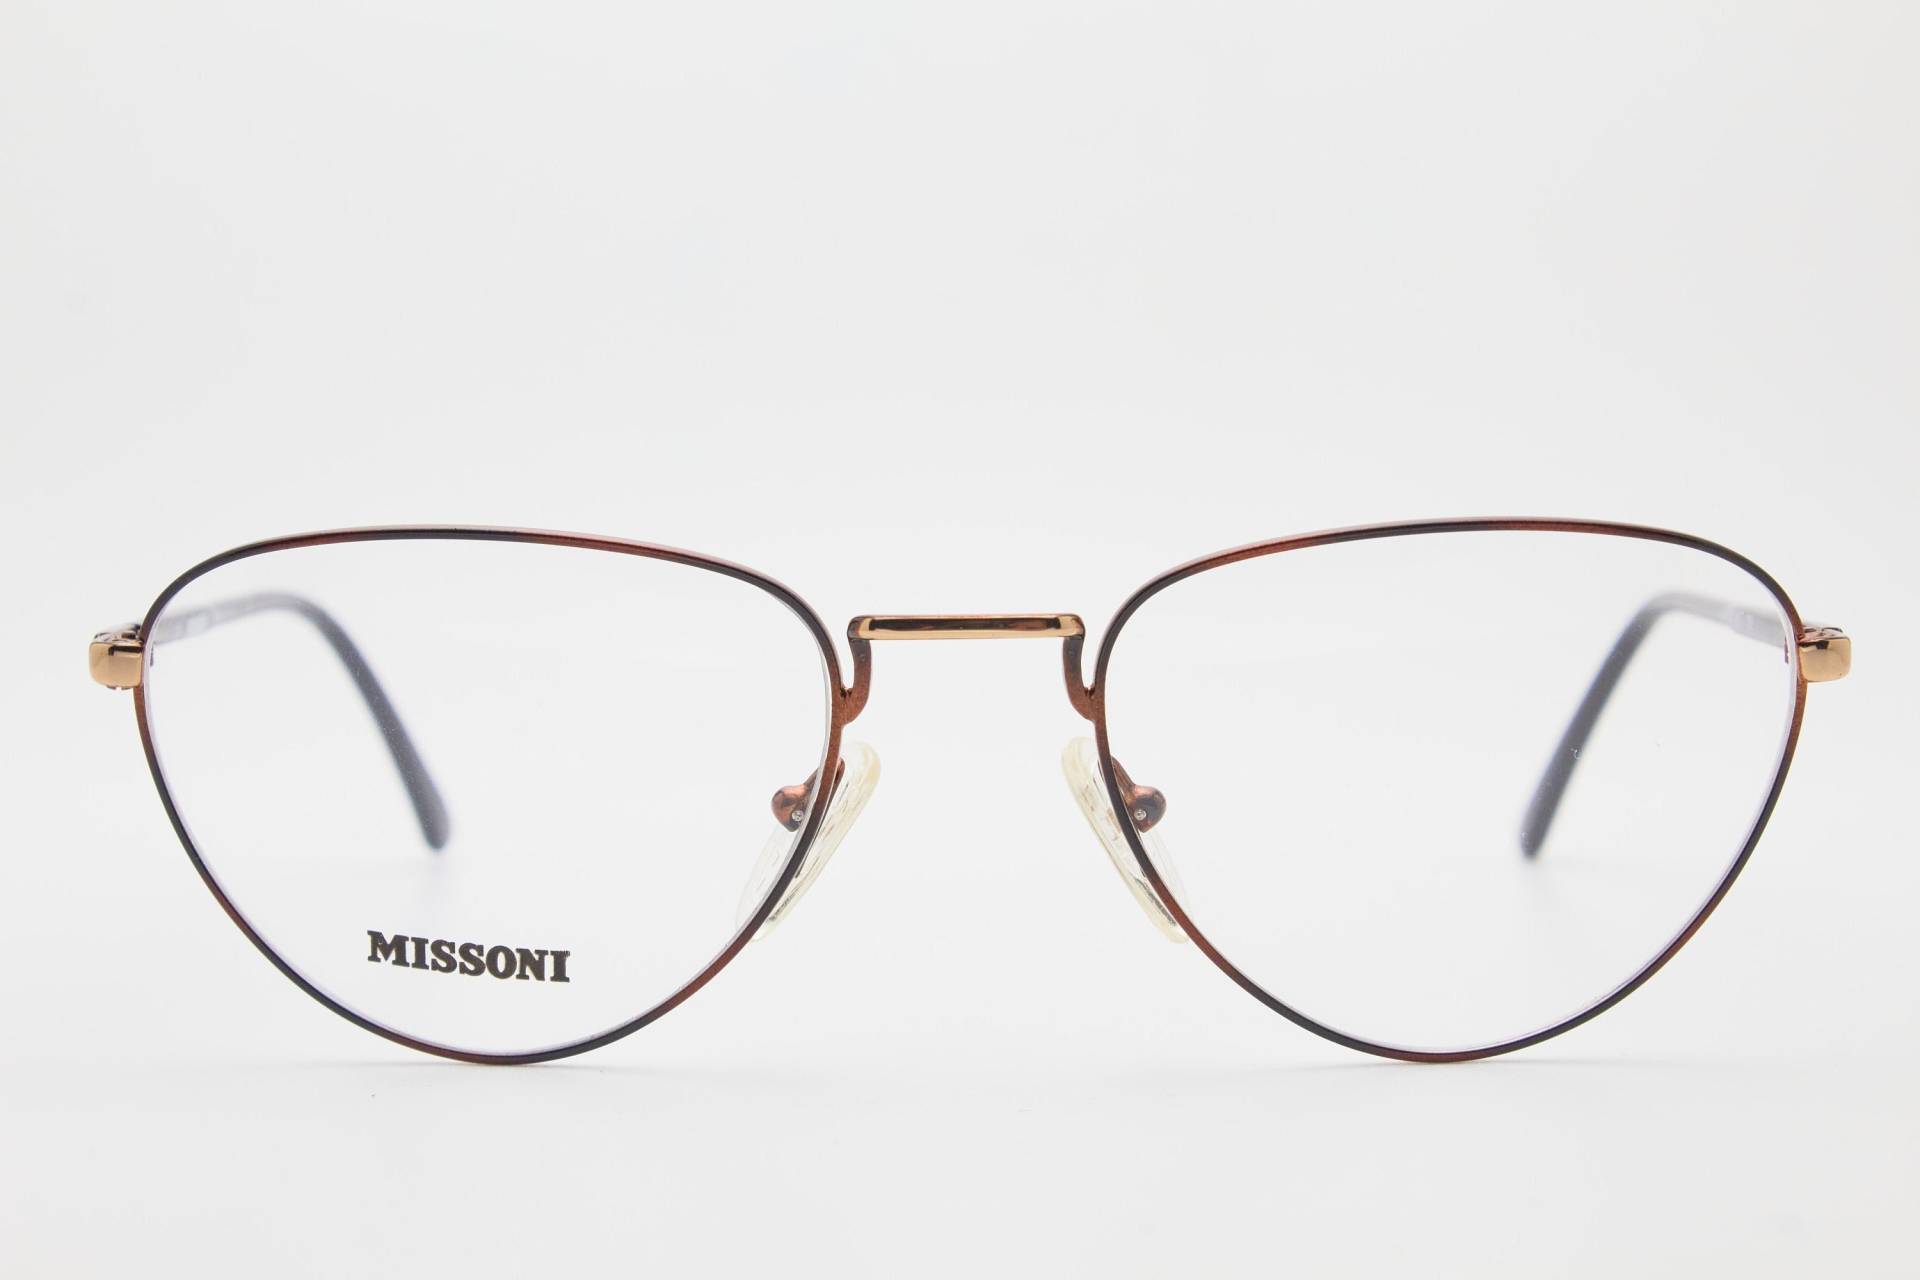 1980Er Jahre Brille Missoni M843 Rot/Schwarzer Rahmen/Hipster Brille/Cateye Brille/Oversize Sonnenbrille Cateye/Vintage Brillenfassung von VintageGlassesVault